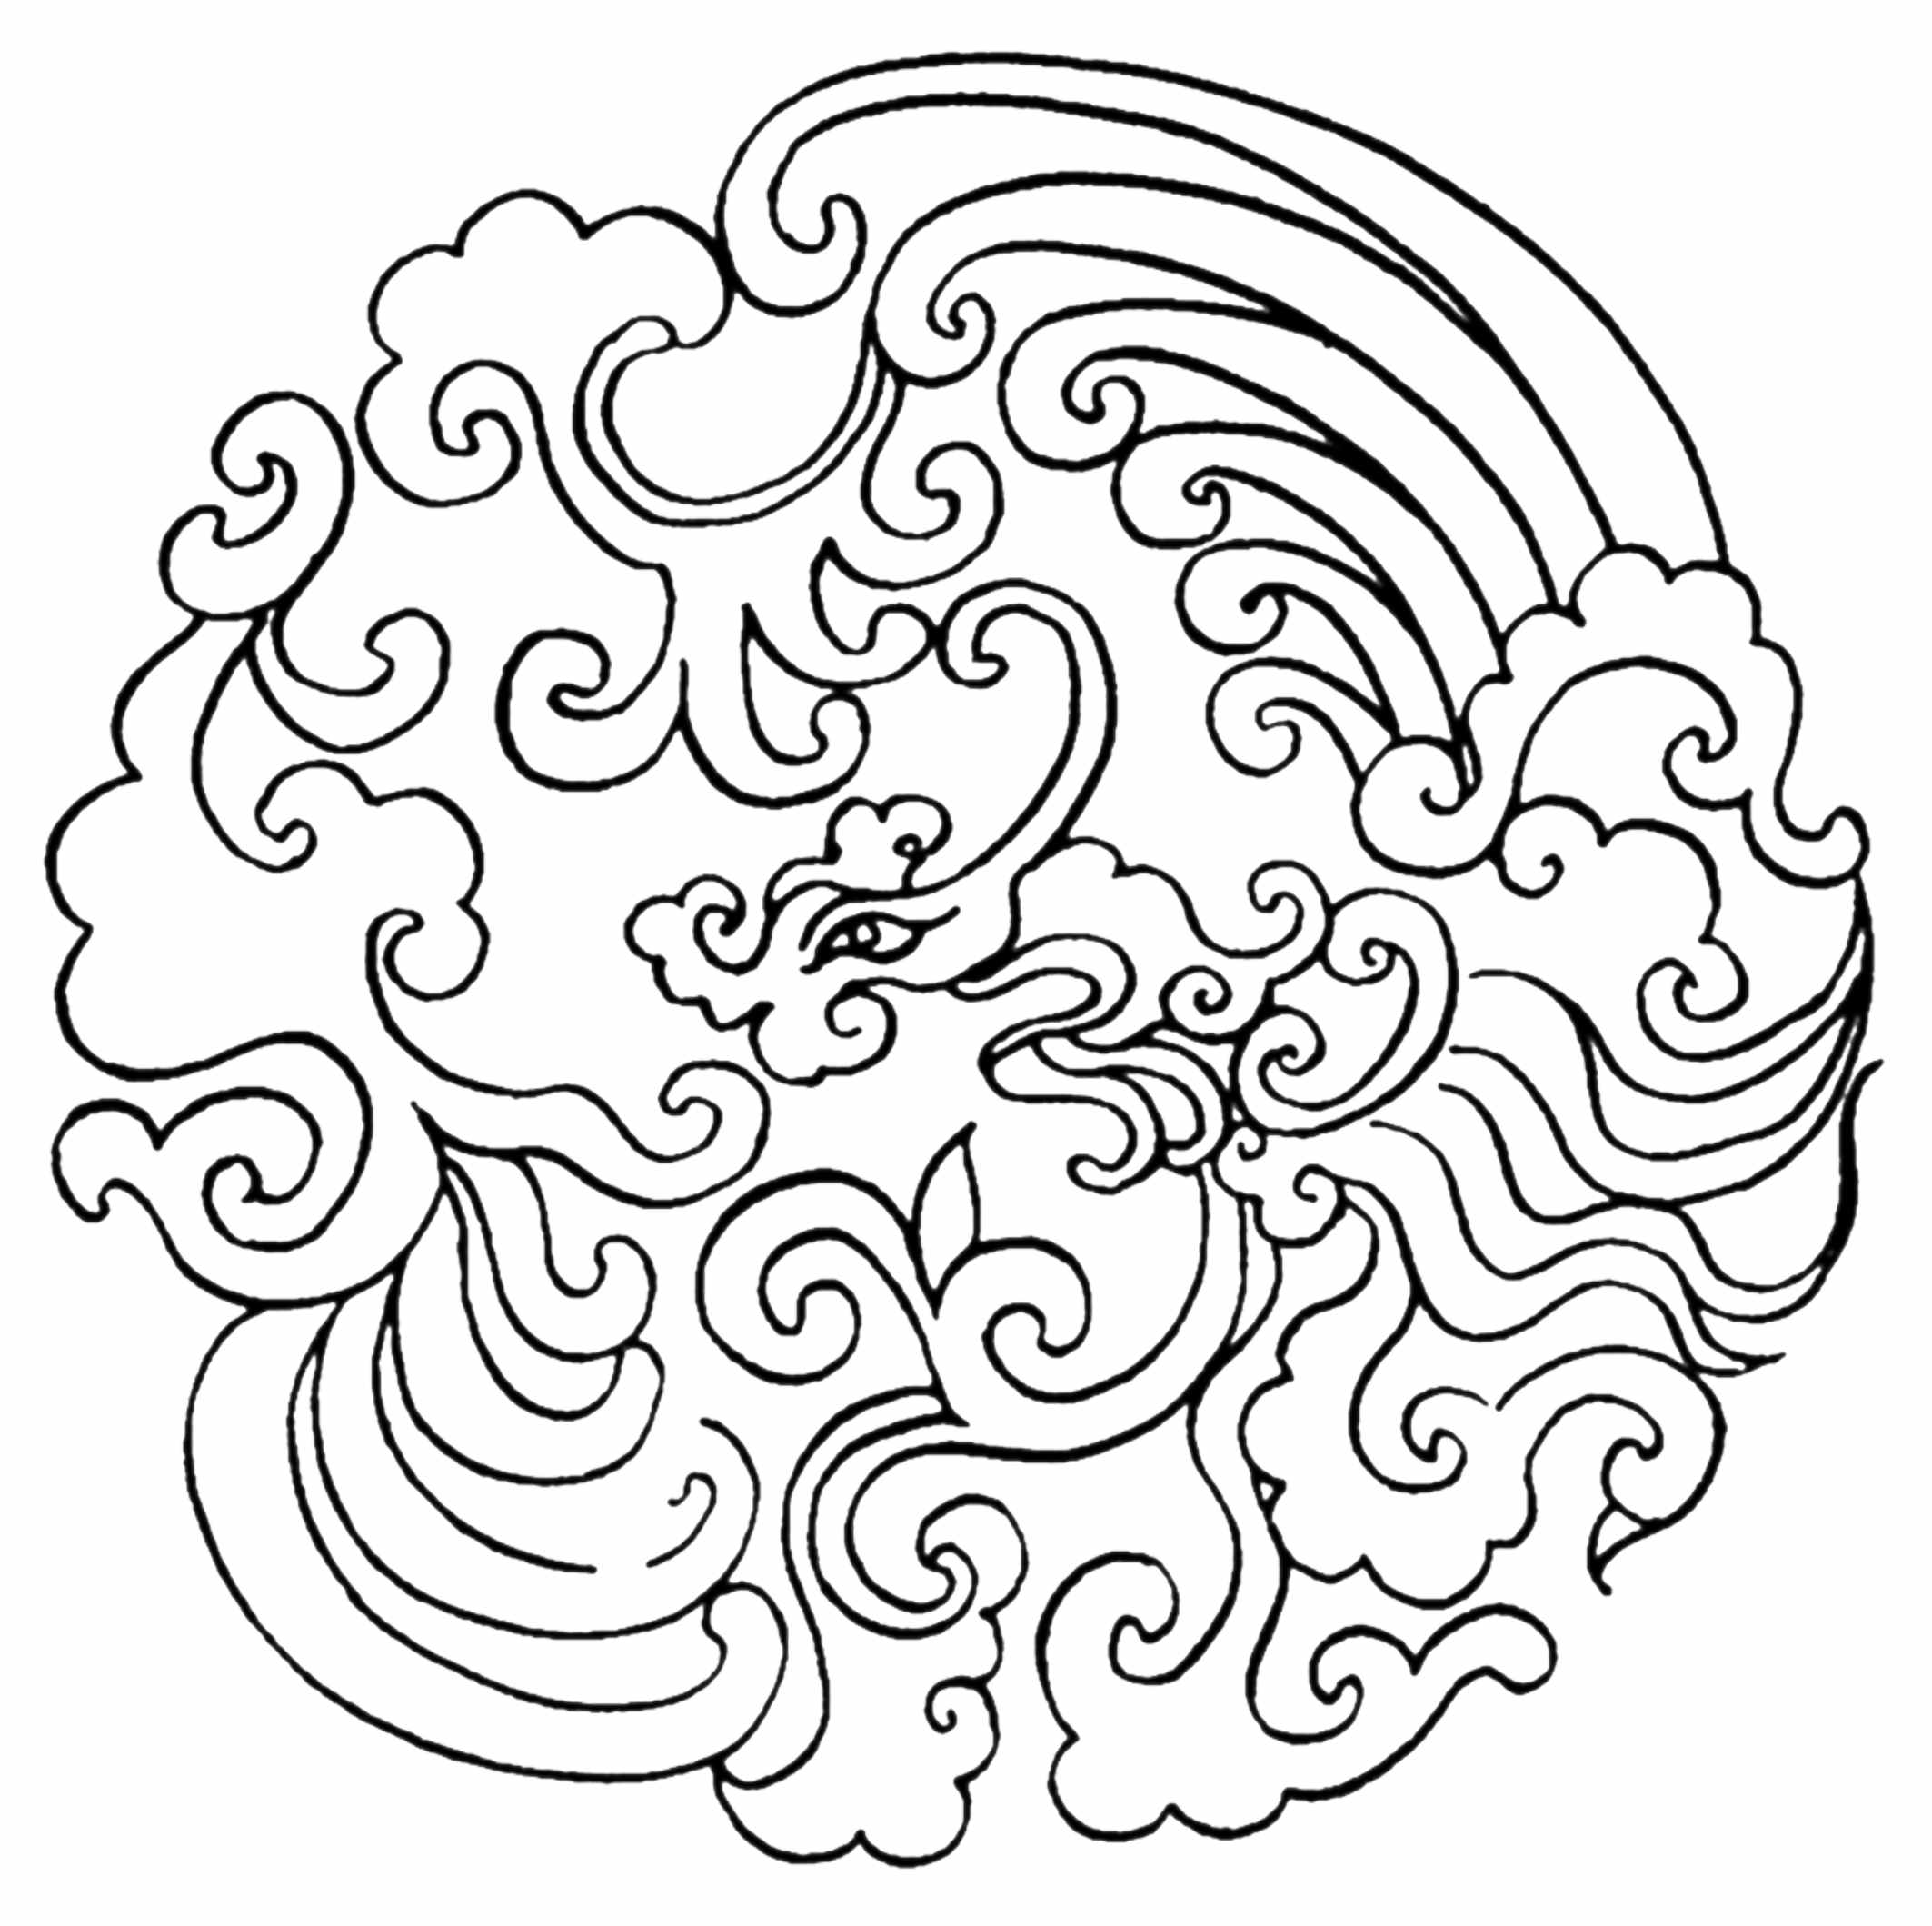 中国古代图案第一弹----凤图案(大图)